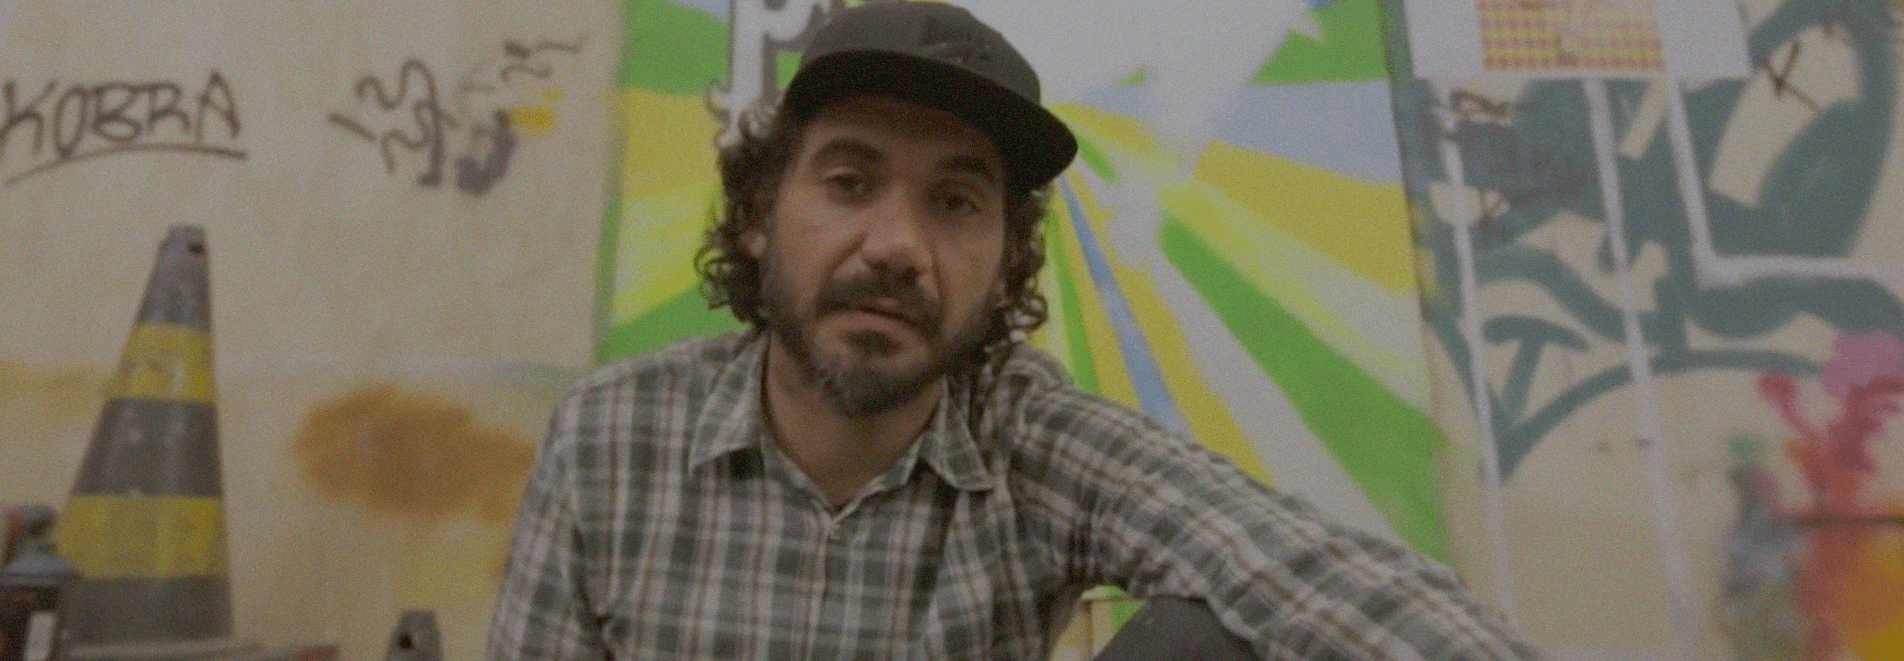 Eduardo Kobra, um dos artistas brasileiros mais reconhecidos atualmente, transformou as cores e ilustrações de seus murais realistas nas vibrantes latas da Perrier.